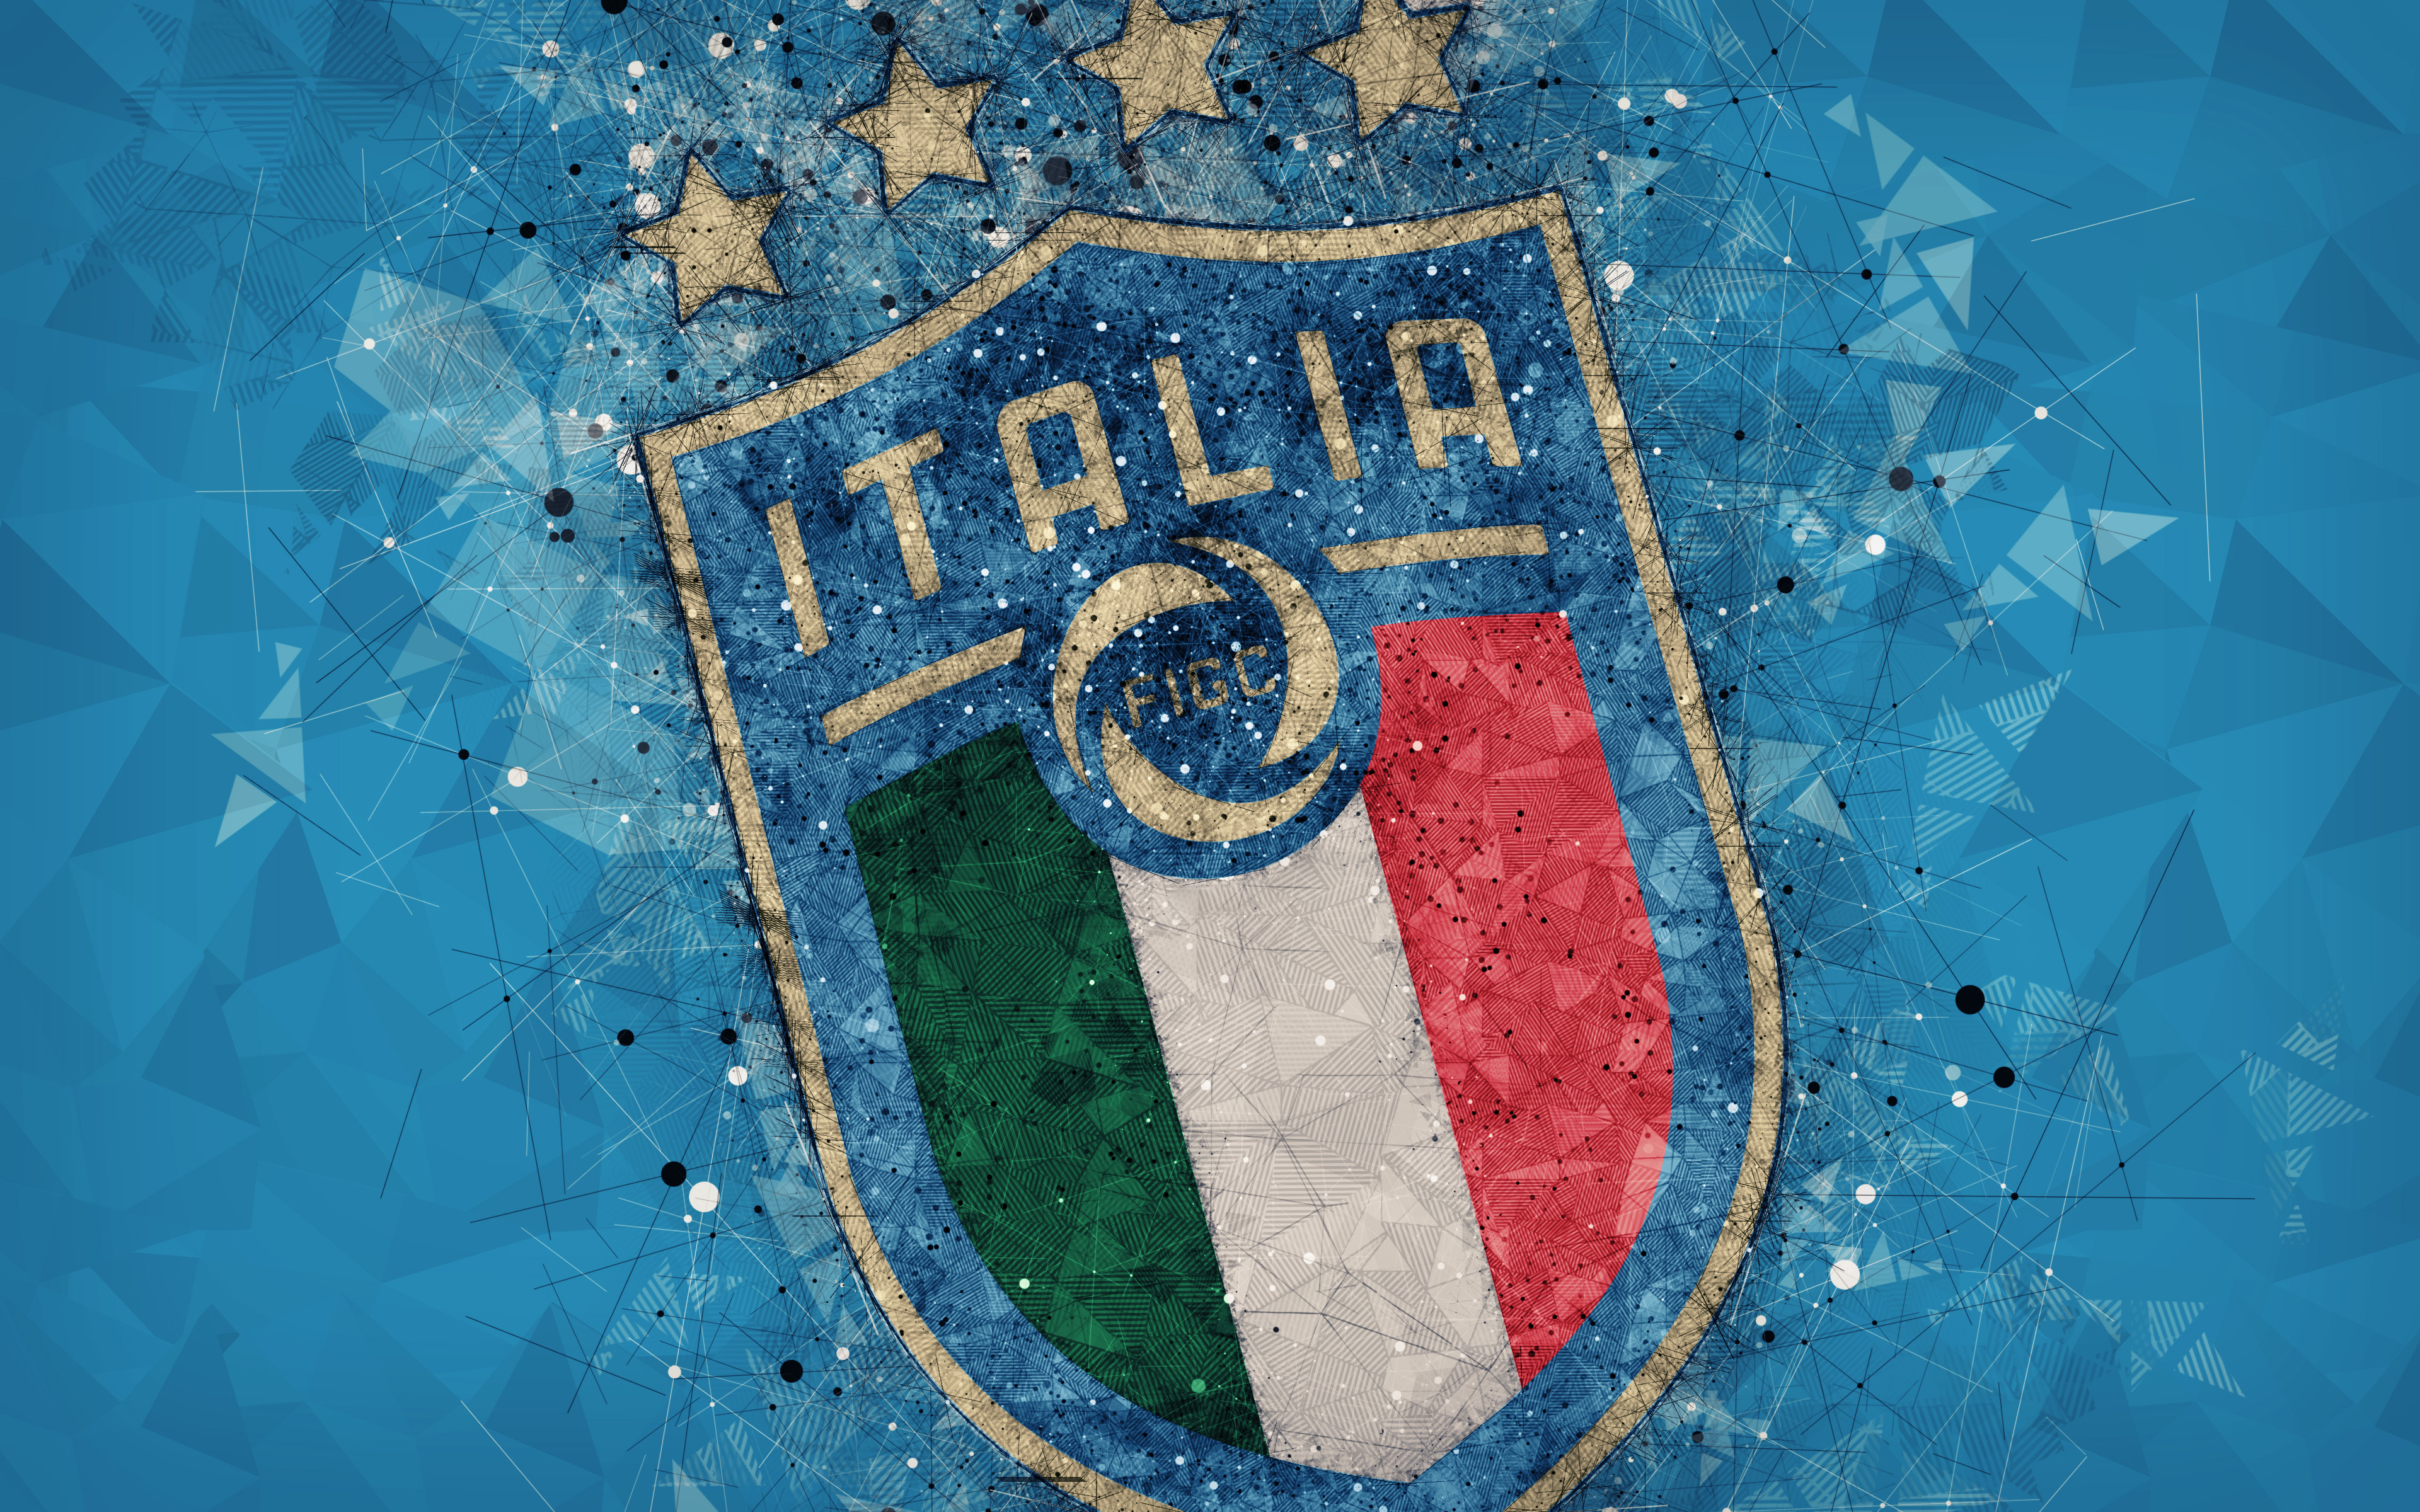 Meilleurs fonds d'écran Équipe D'italie De Football pour l'écran du téléphone